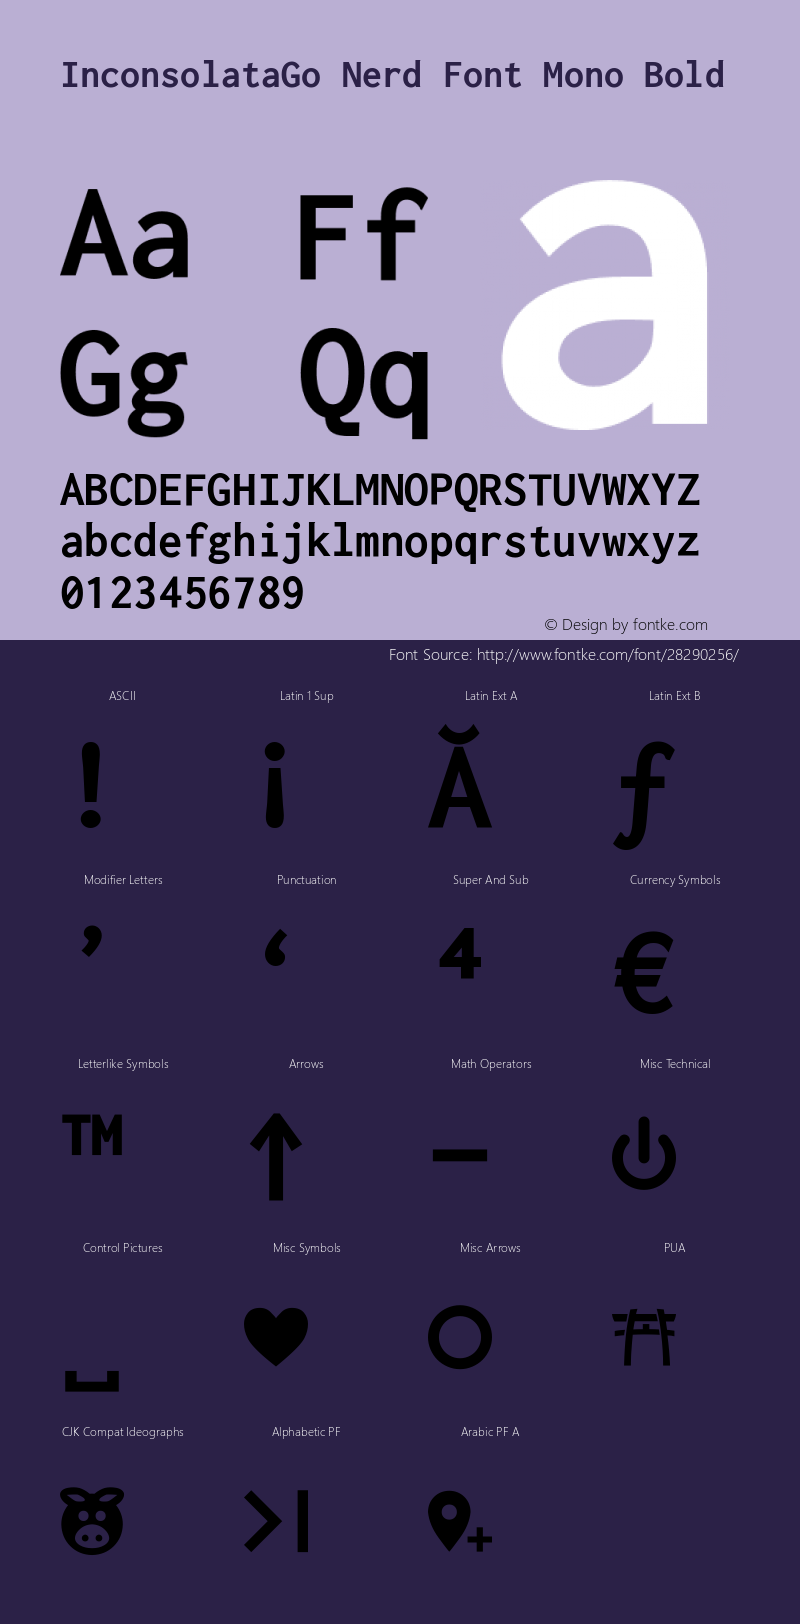 InconsolataGo Bold Nerd Font Complete Mono Version 1.015; ttfautohint (v0.92) -l 8 -r 50 -G 200 -x 14 -w 